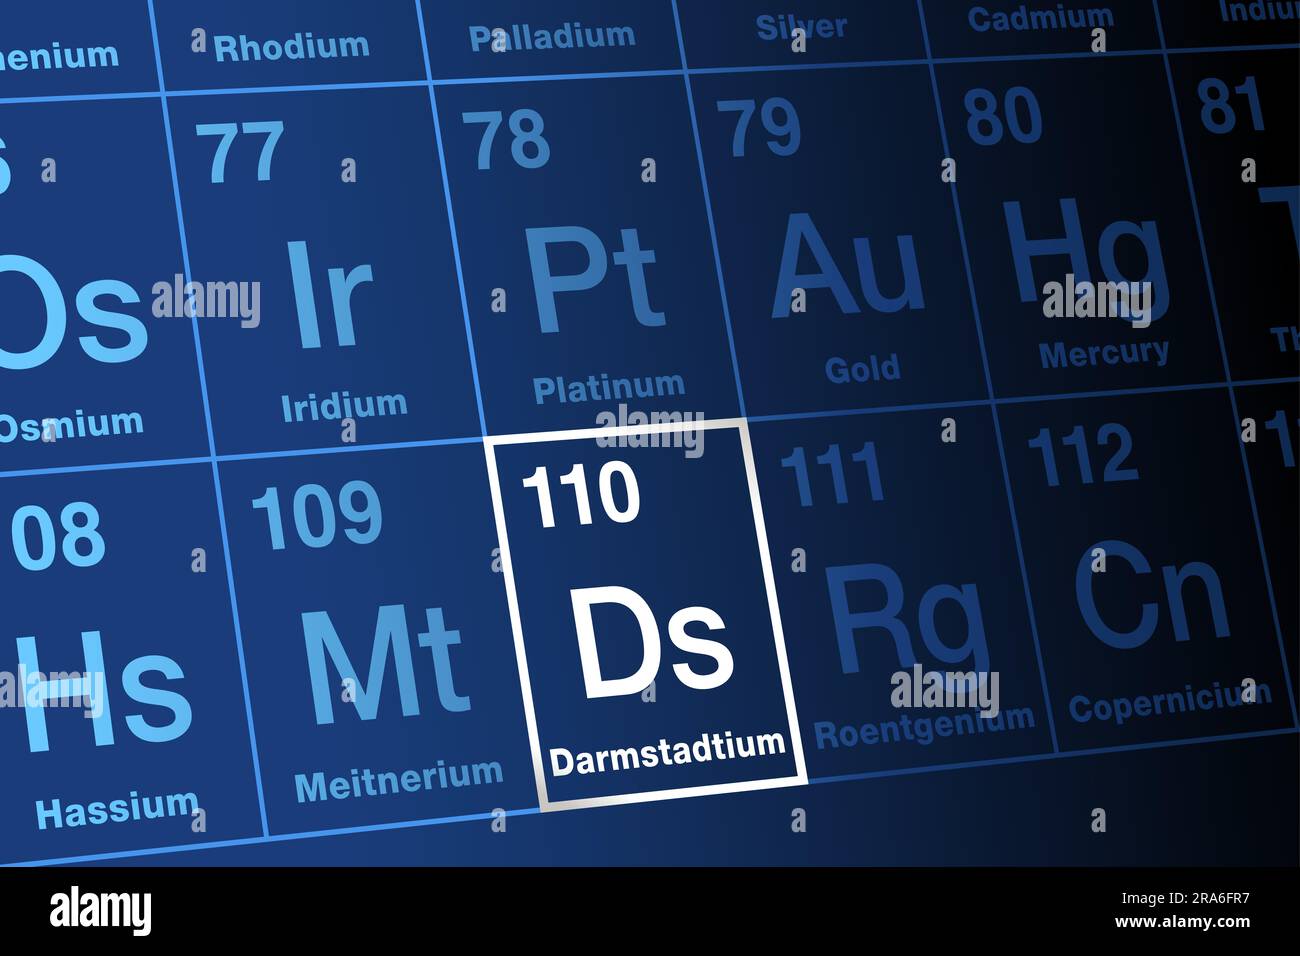 Darmstadtium, sur le tableau périodique. Elément de transactinide synthétique extrêmement radioactif, superlourd, avec le symbole d'élément DS et le numéro atomique 110. Banque D'Images